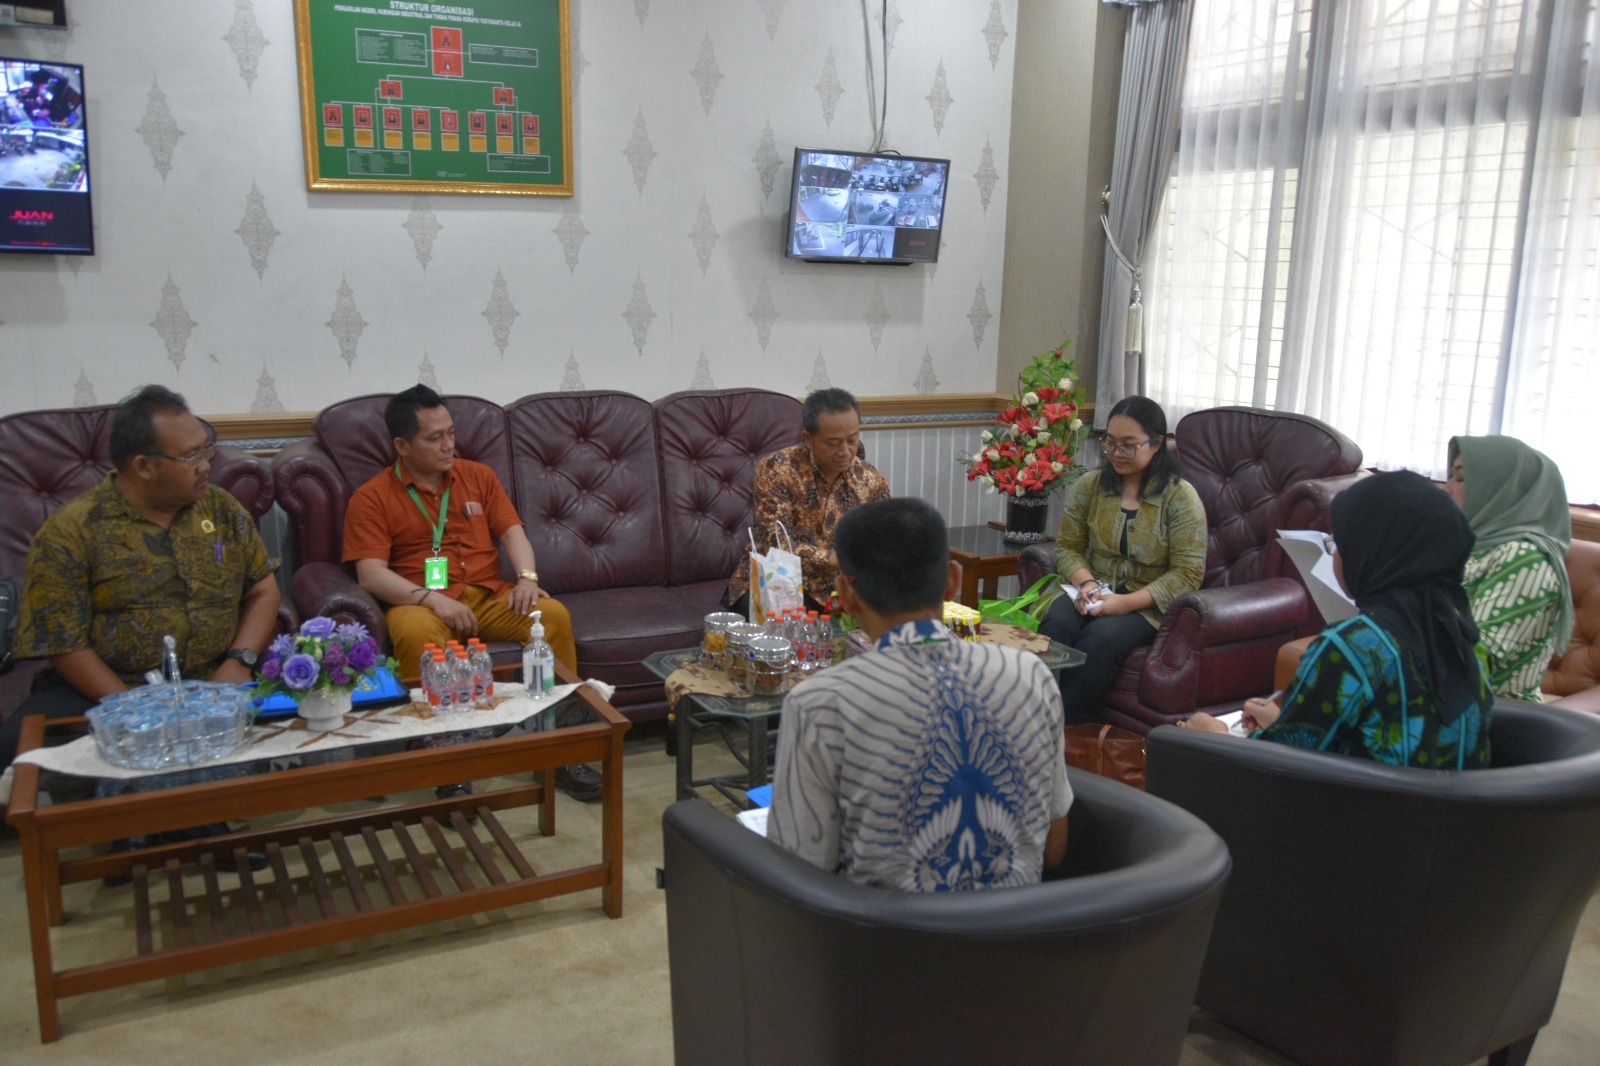 Pengadilan Negeri Yogyakarta Melaksanakan Eksekusi Perkara Perdata Khusus Hubungan Industrial secara Sukarela